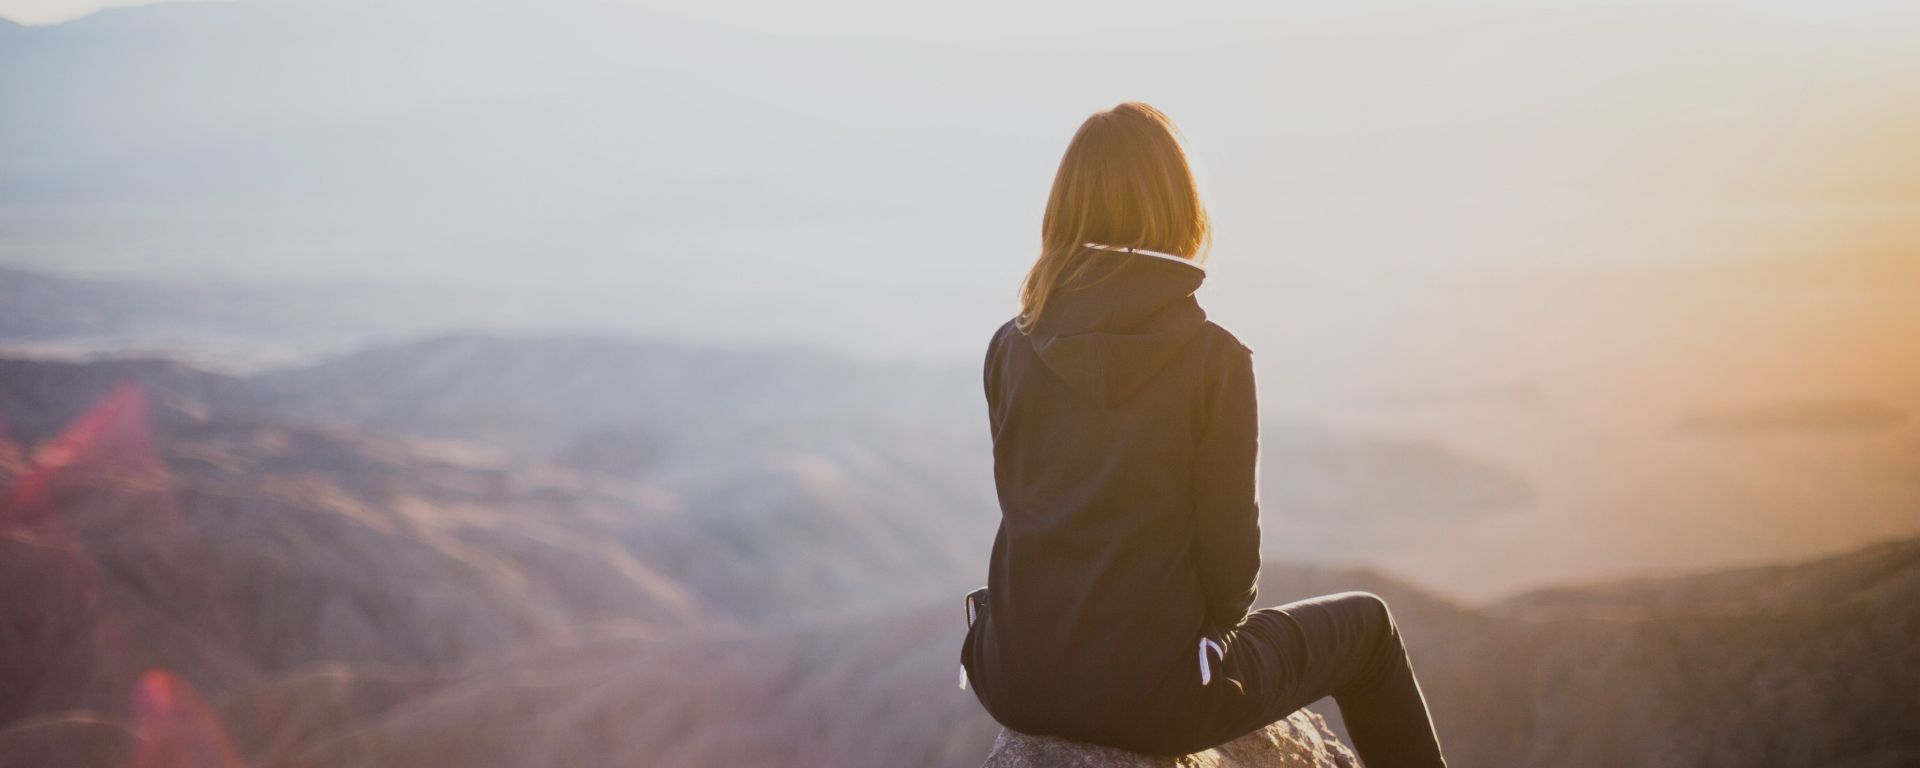 Eine Frau hat einen Berg bewandert - sie reflektiert über die eigene psychische Gesundheit